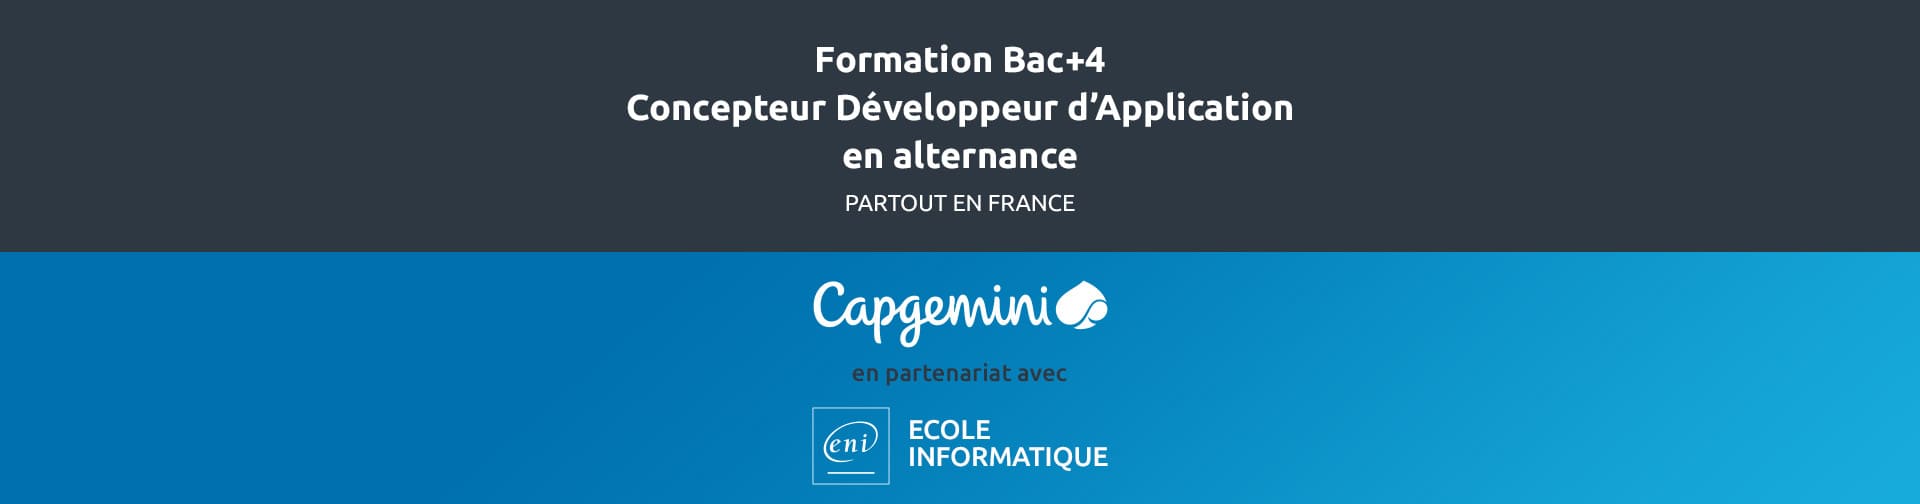 Formation Bac+4 Concepteur Développeur d'Applications en alternance avec Capgemini